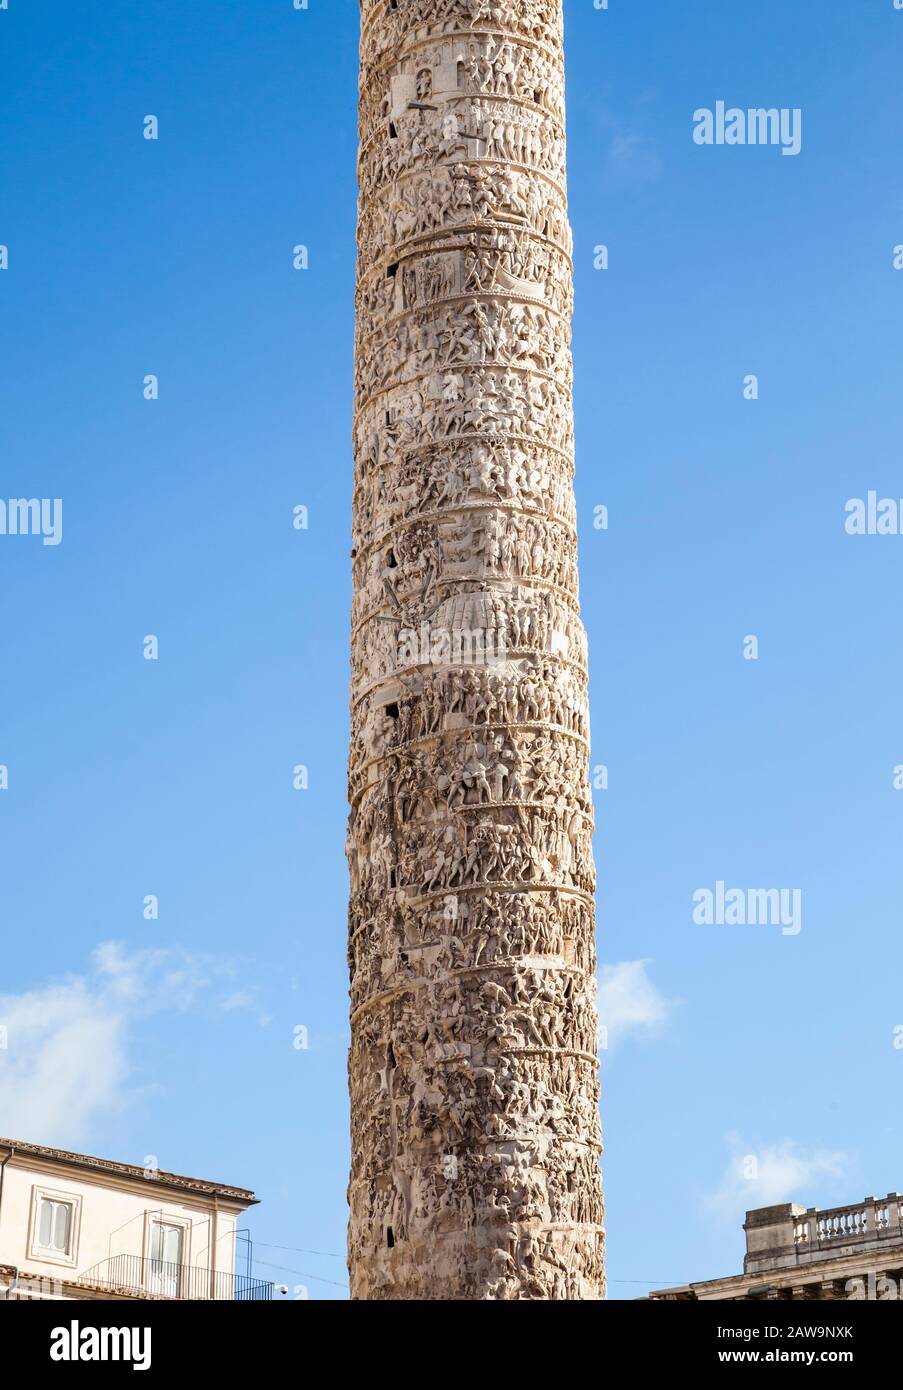 Columna De Marco Aurelio, Roma Italia. 193 DC. Tiene 130 pies de altura y las tallas en los 27 bloques de mármol de Carrara cuentan la historia Foto de stock